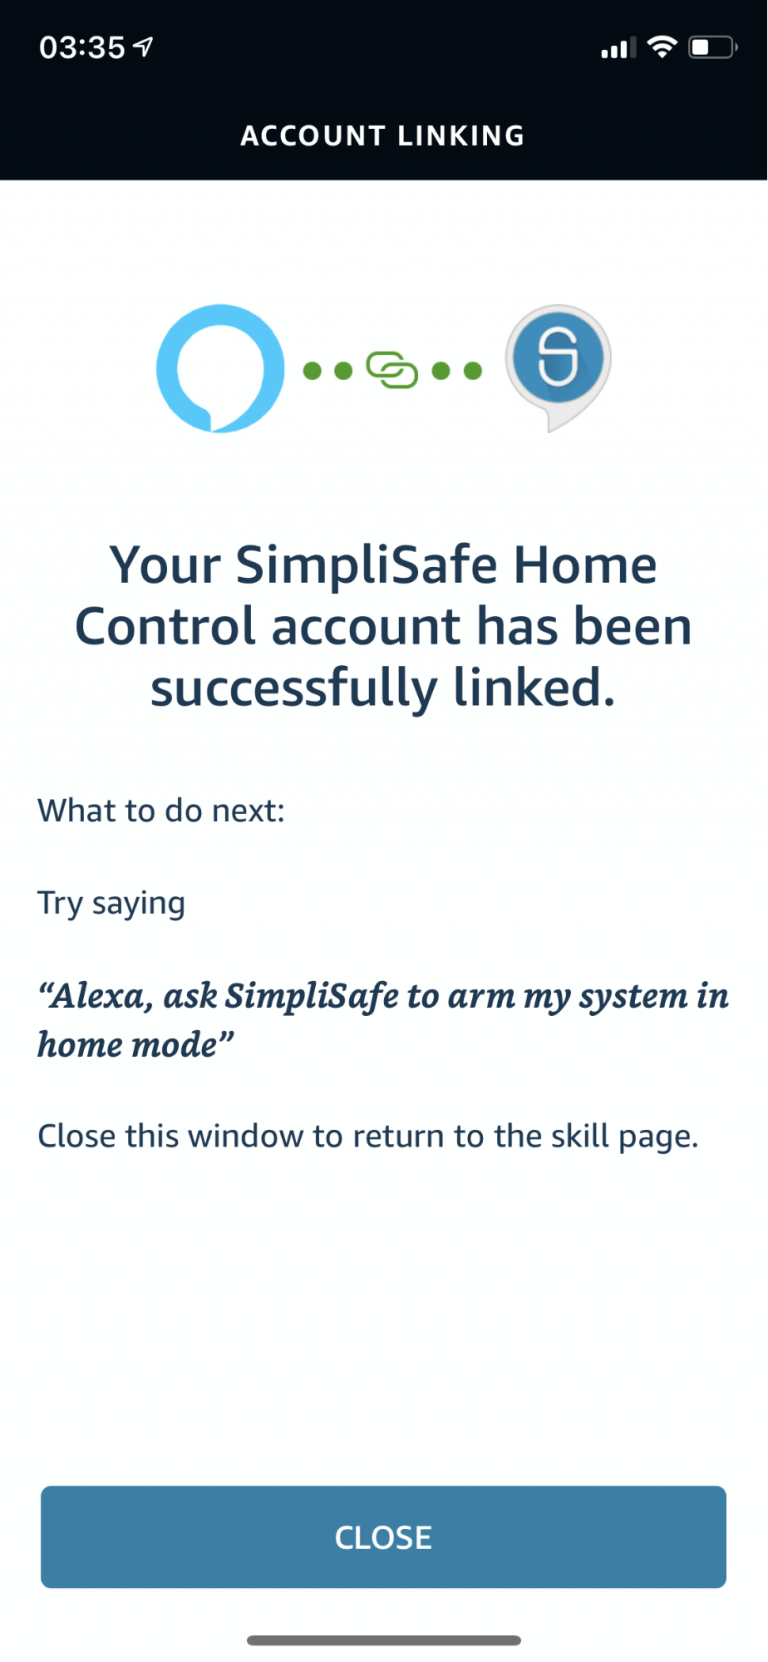 Captura de tela do aplicativo Alexa mostrando a página de confirmação de habilidade simplicafe